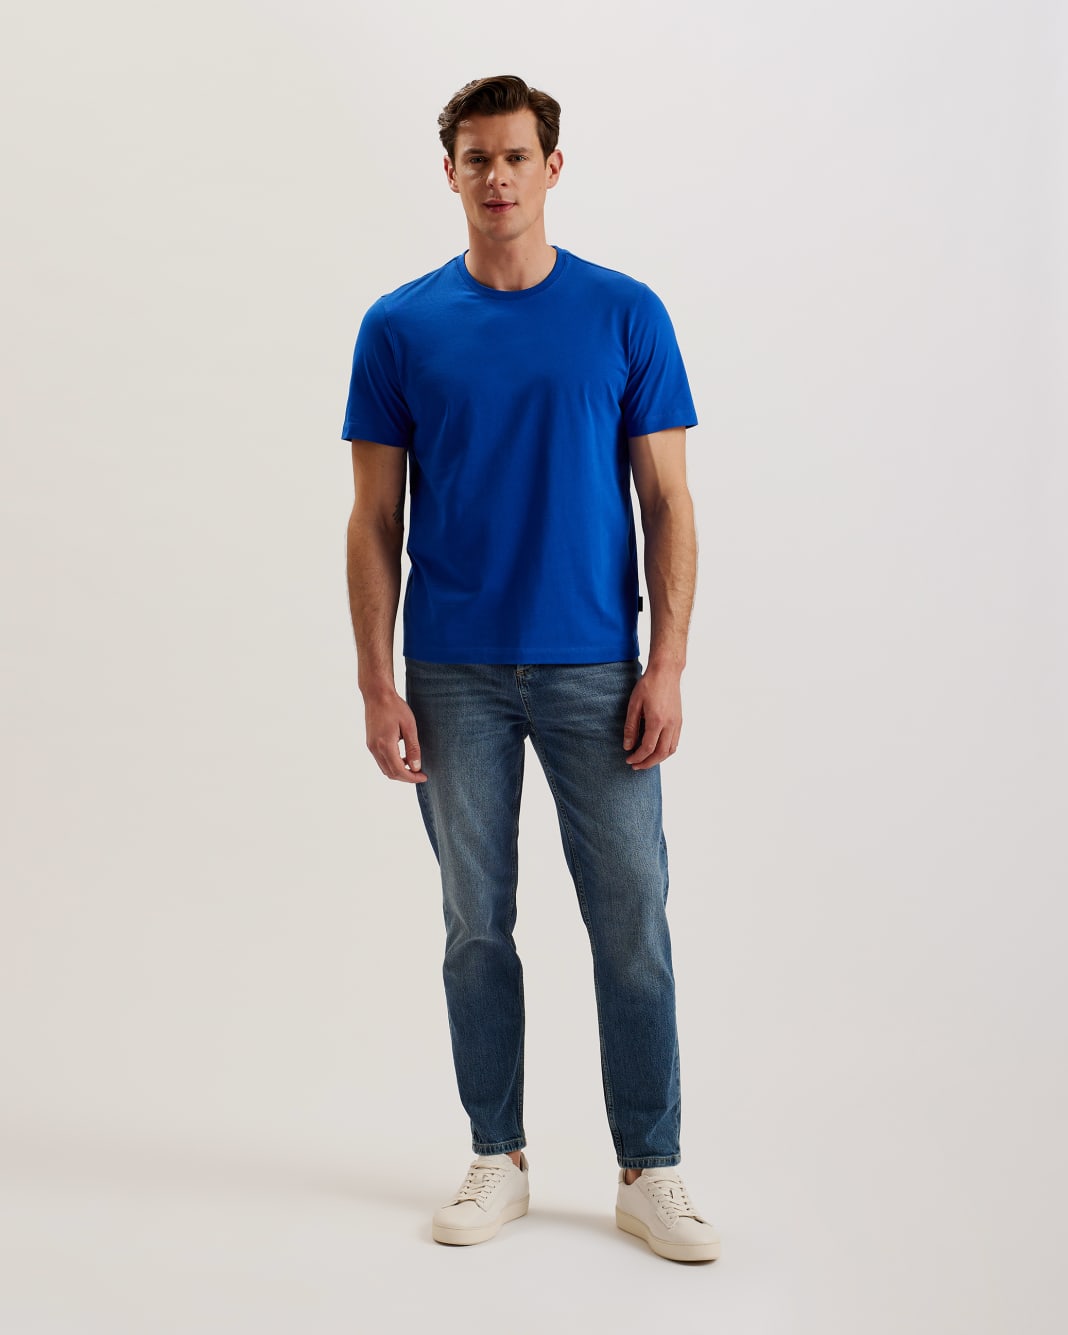 테드베이커 Tedbaker Short Sleeve Regular Fit Plain T-shirt,Blue